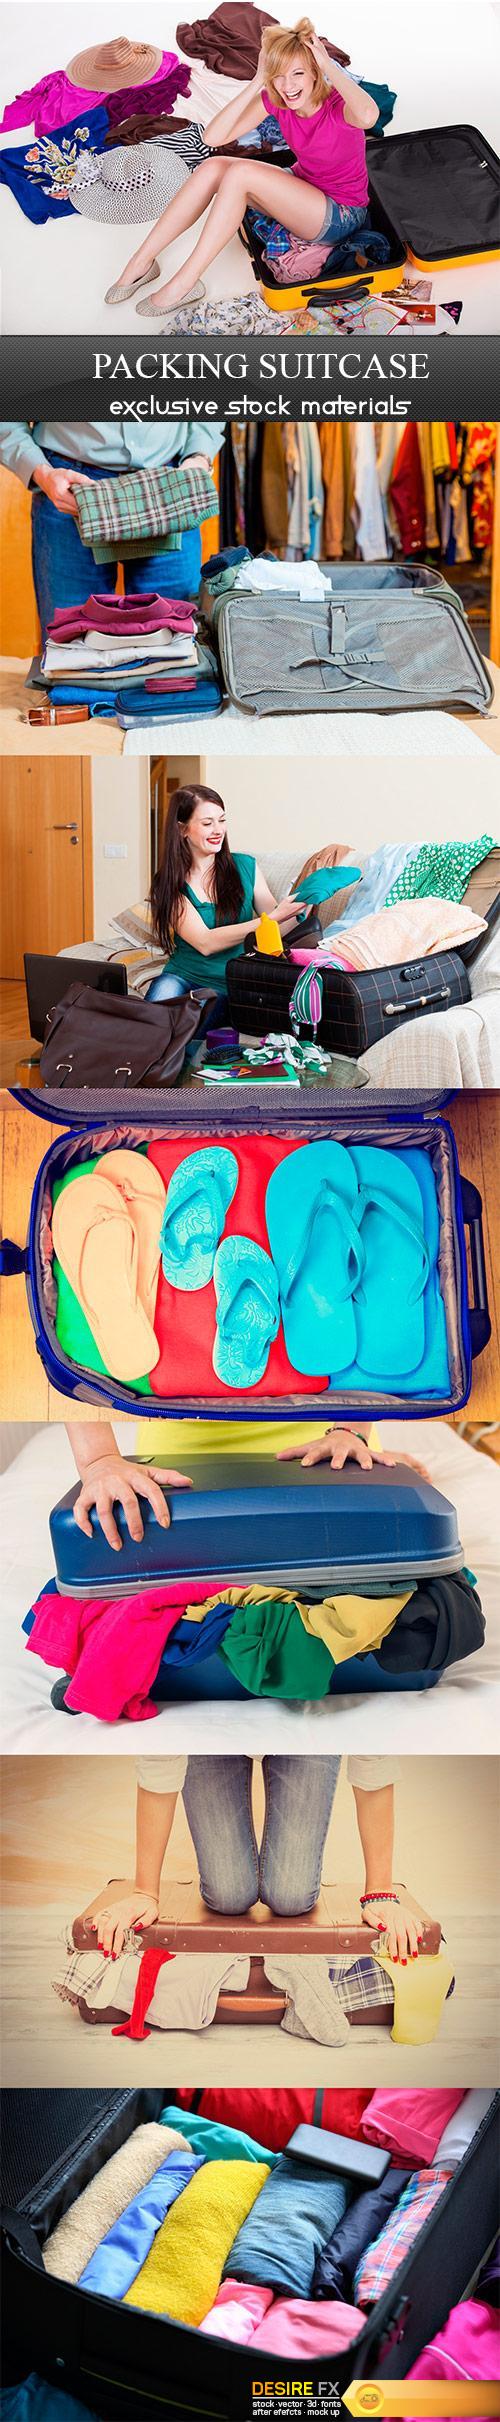 Packing suitcase - 7UHQ JPEG